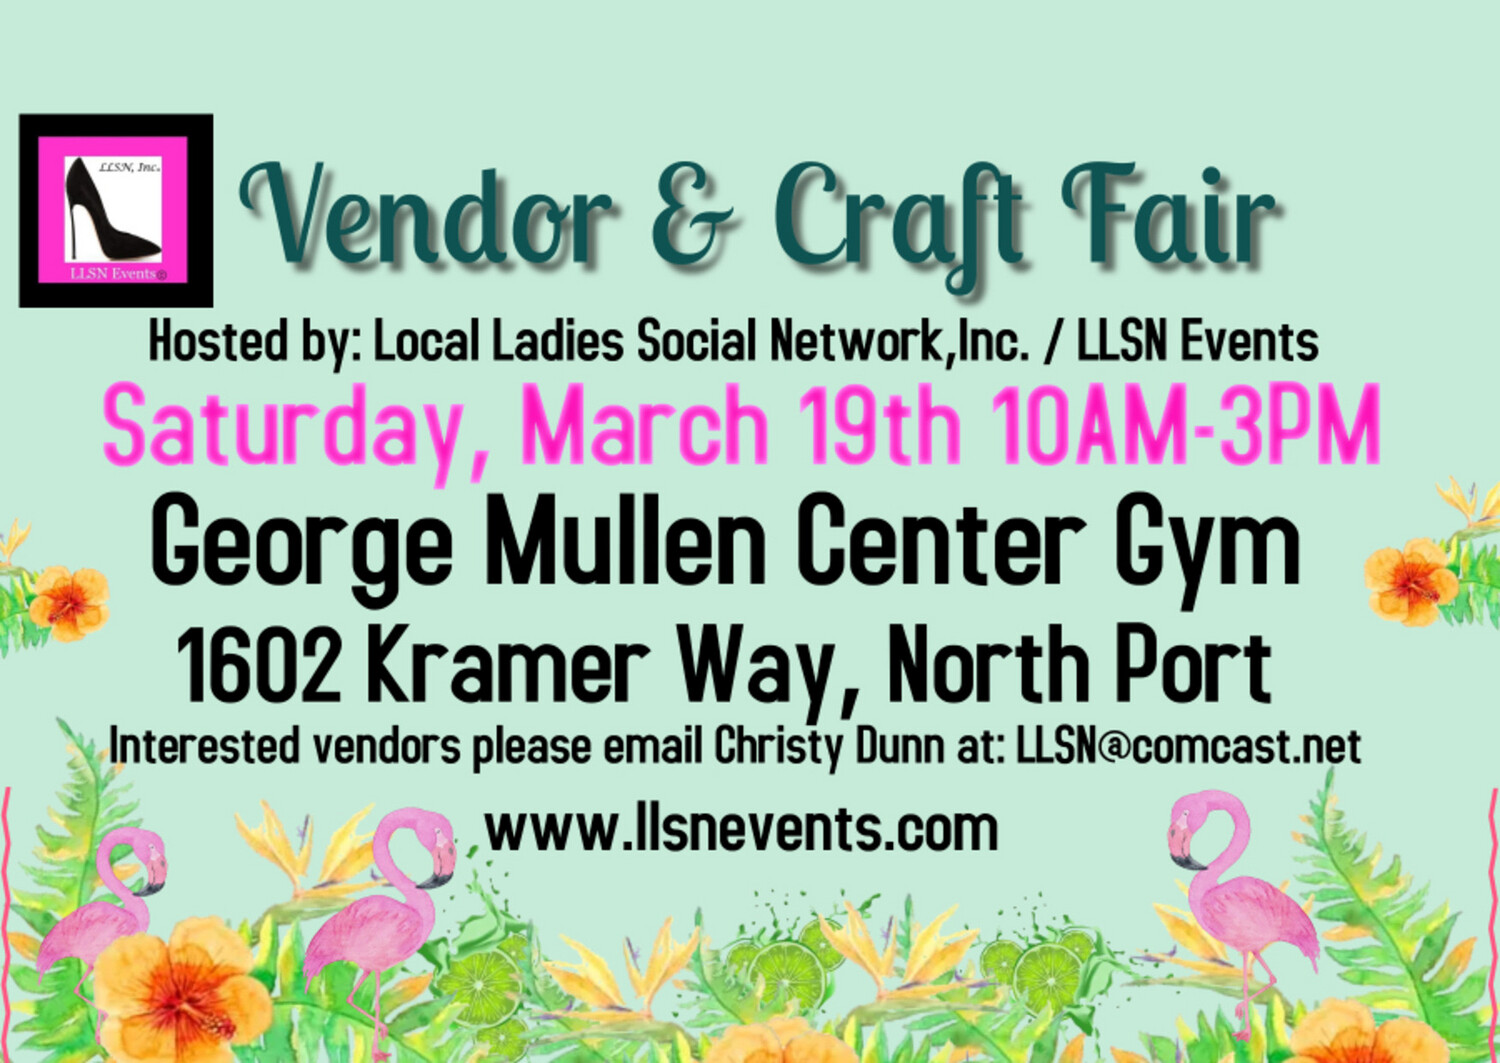 
Vendor & Craft Fair- Indoors in North Port, March 19th